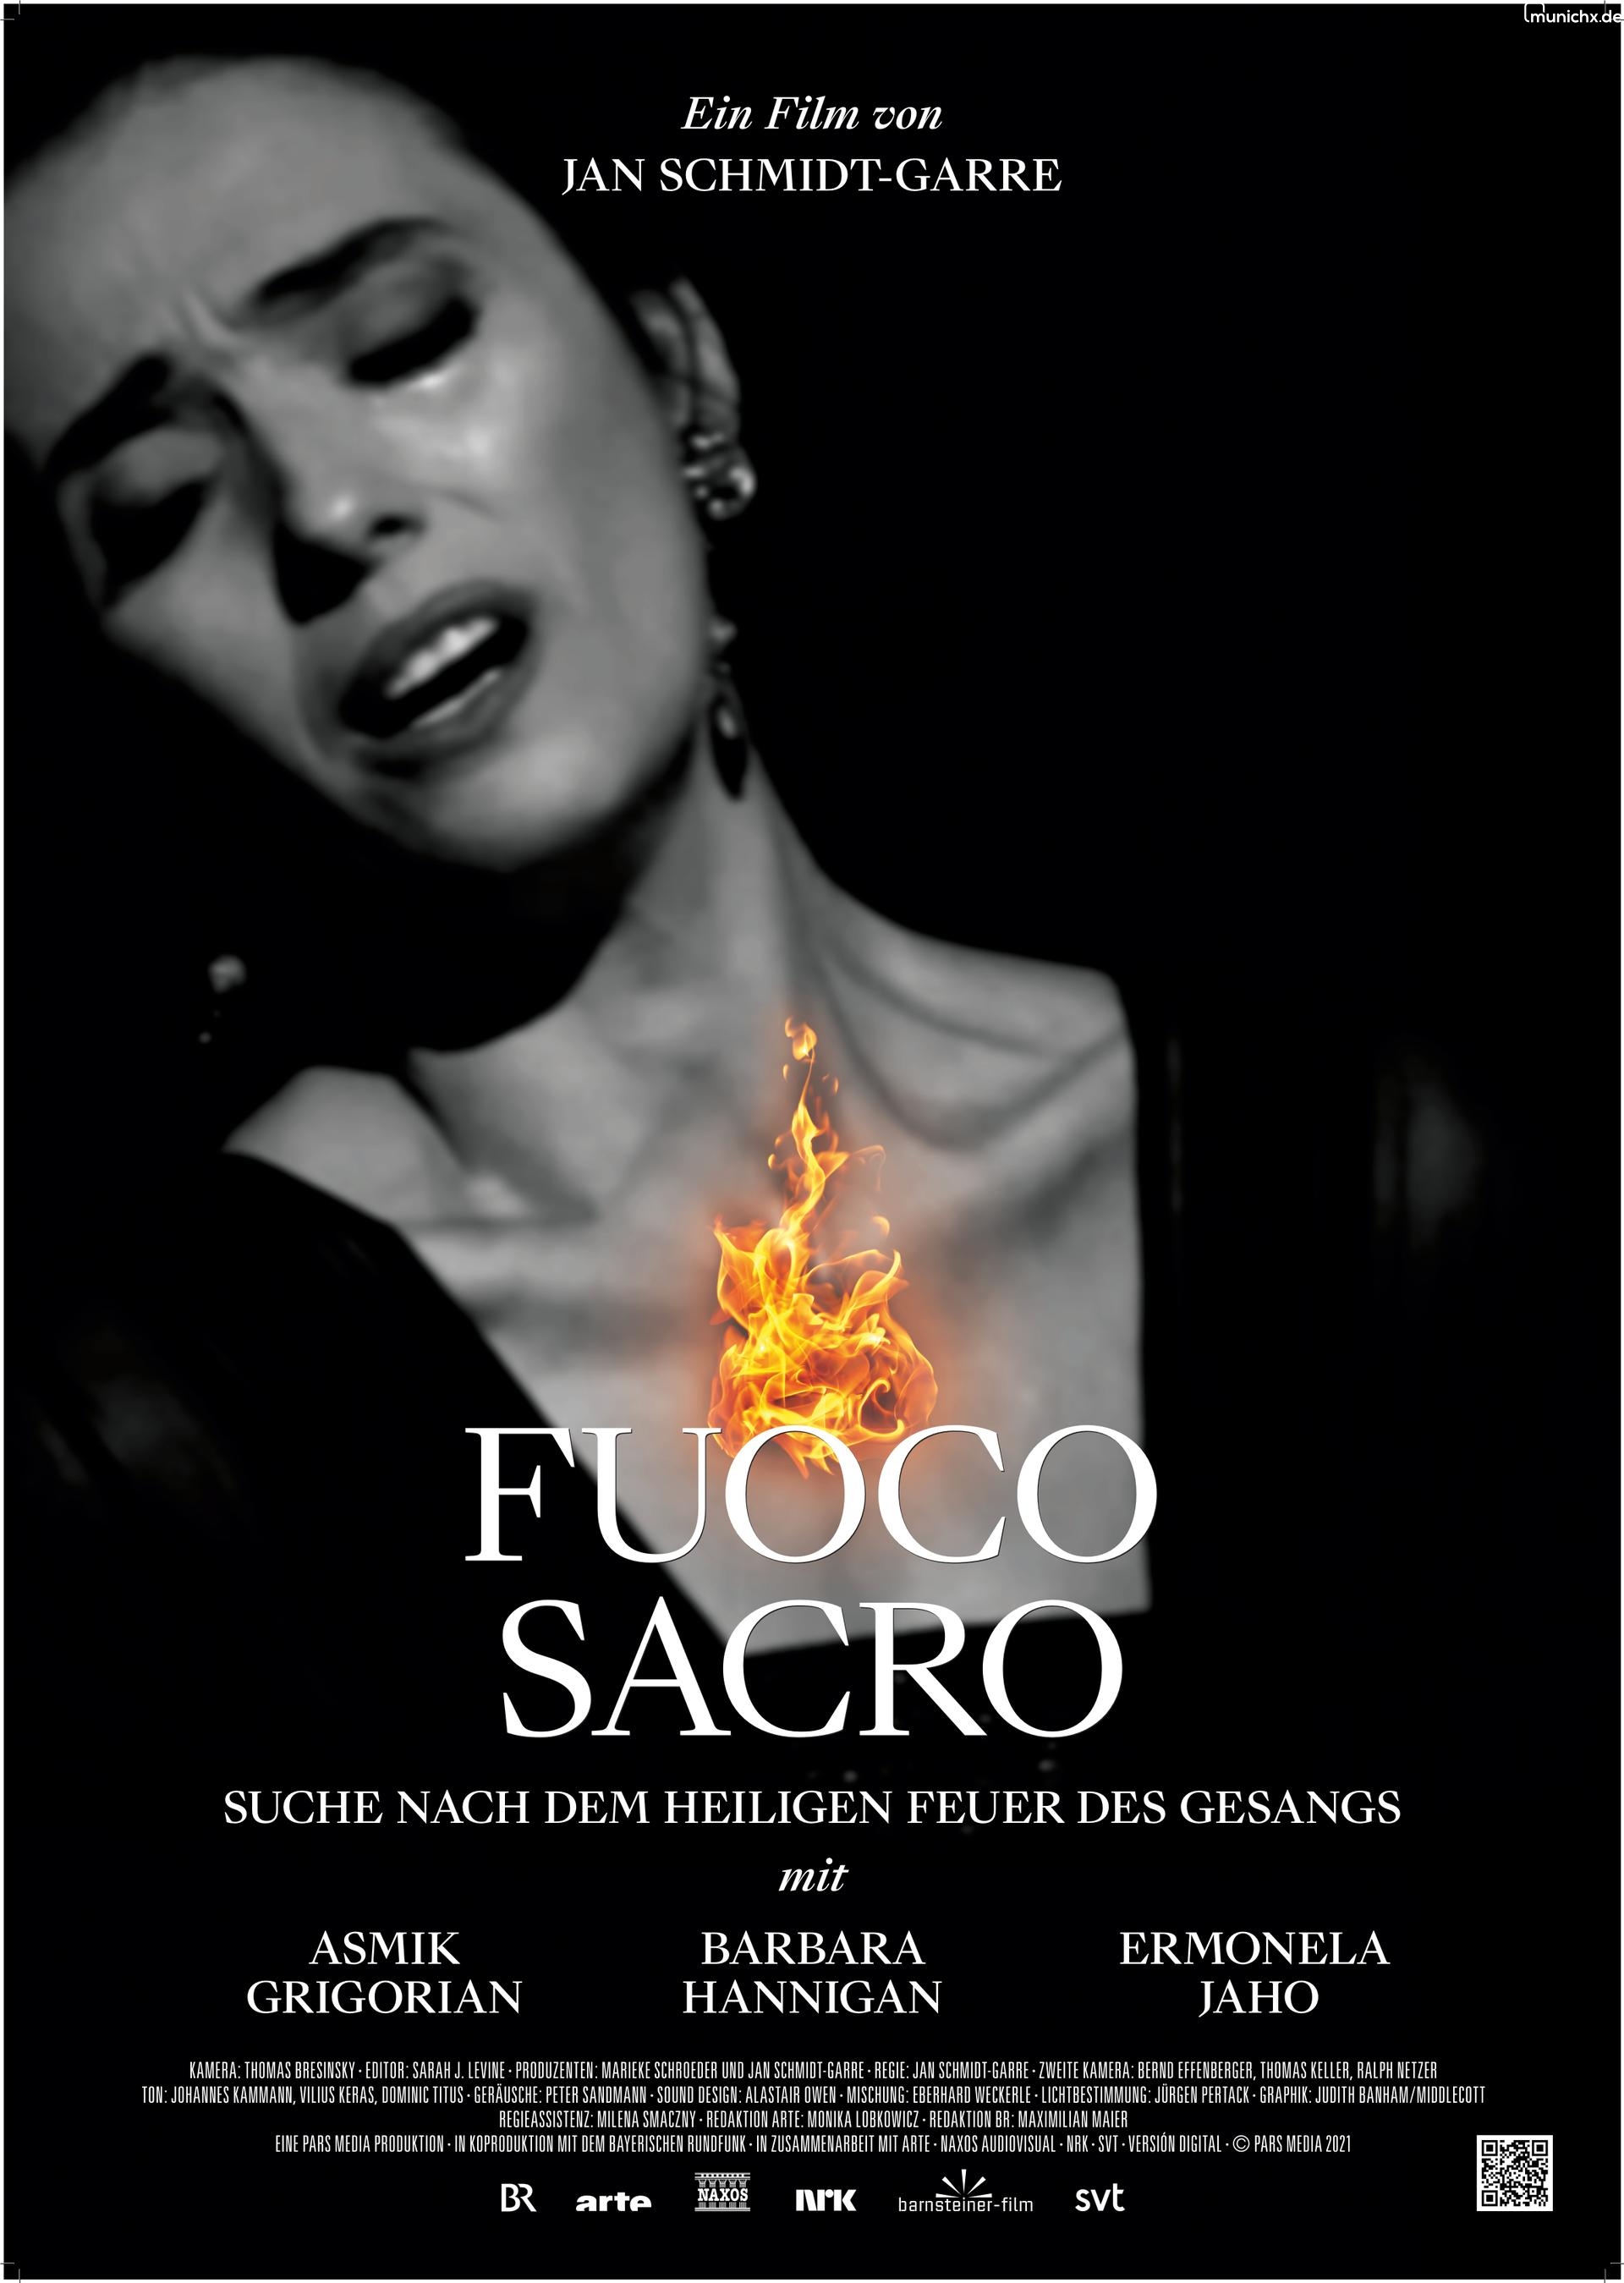 Fuoco Sacro - Suche nach dem heiligen Feuer des Gesangs